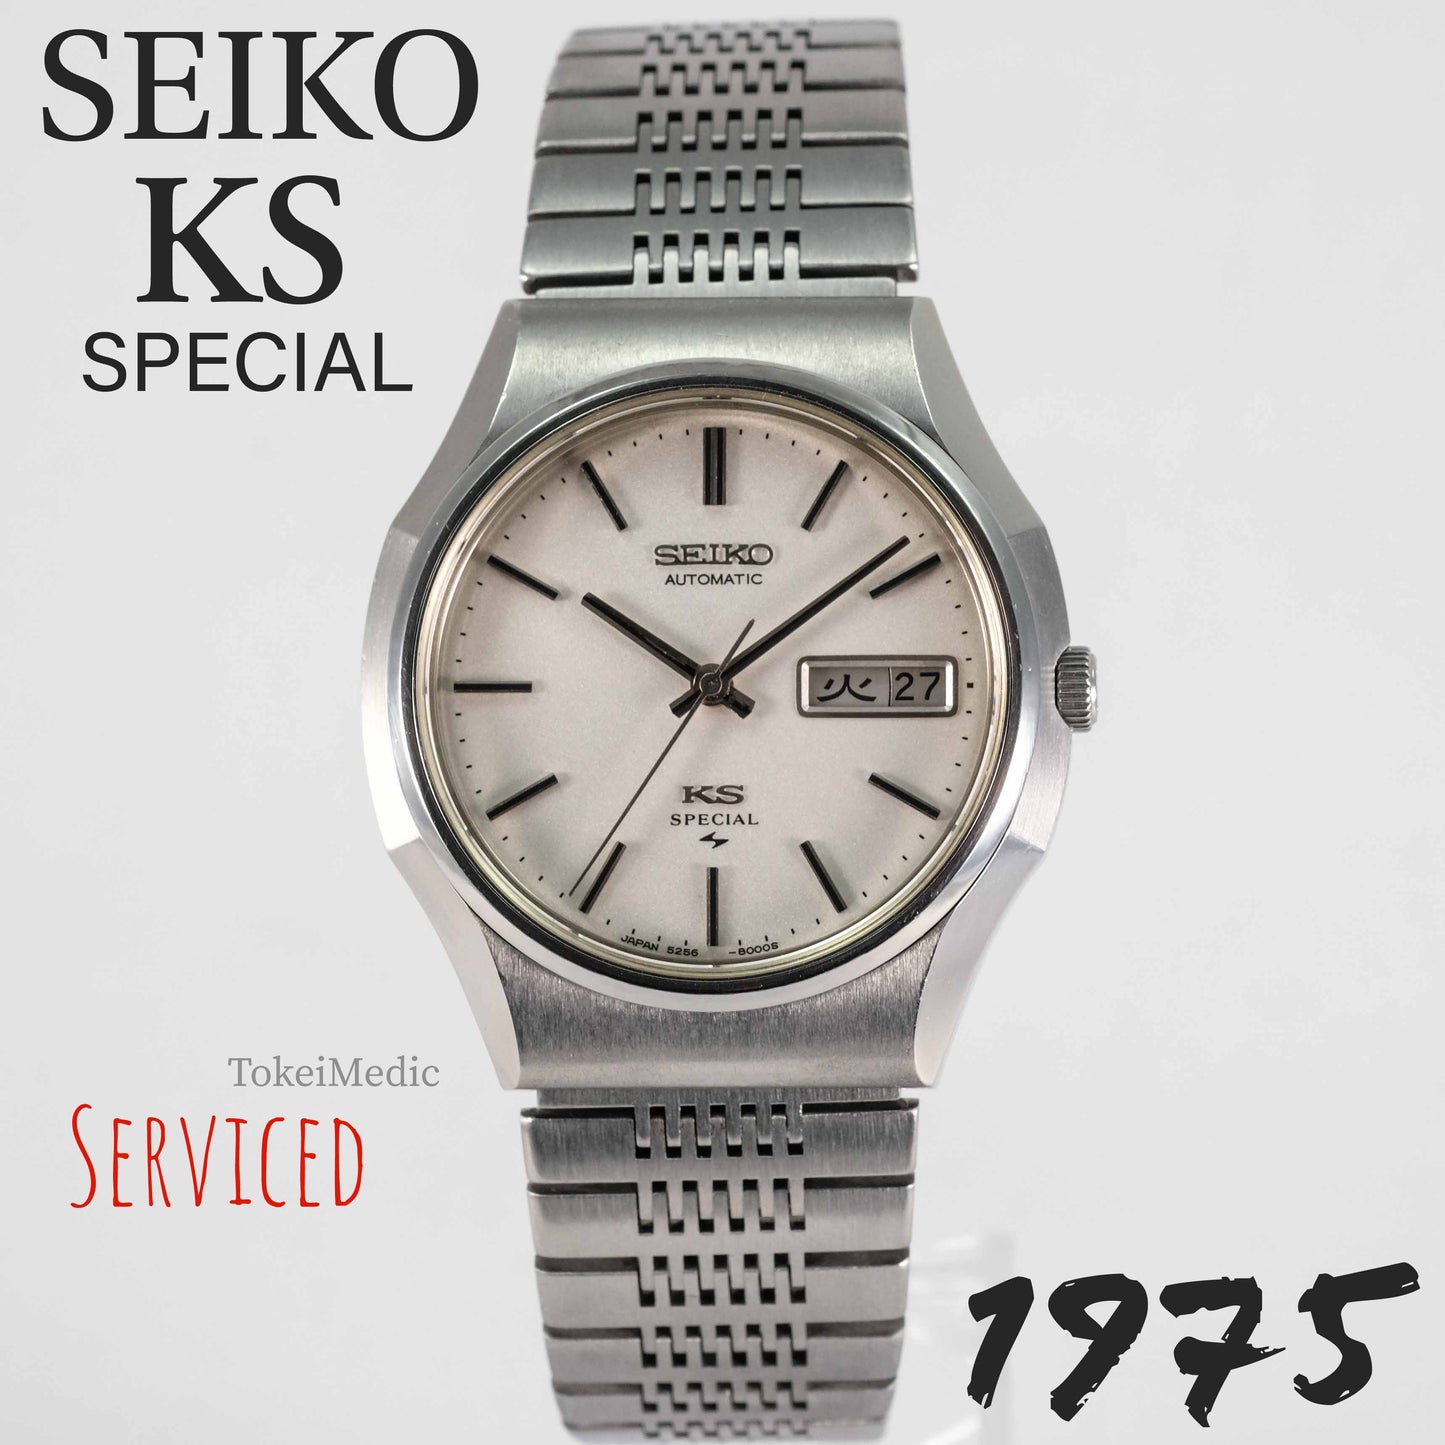 1975 Seiko KS Special 5256-8000